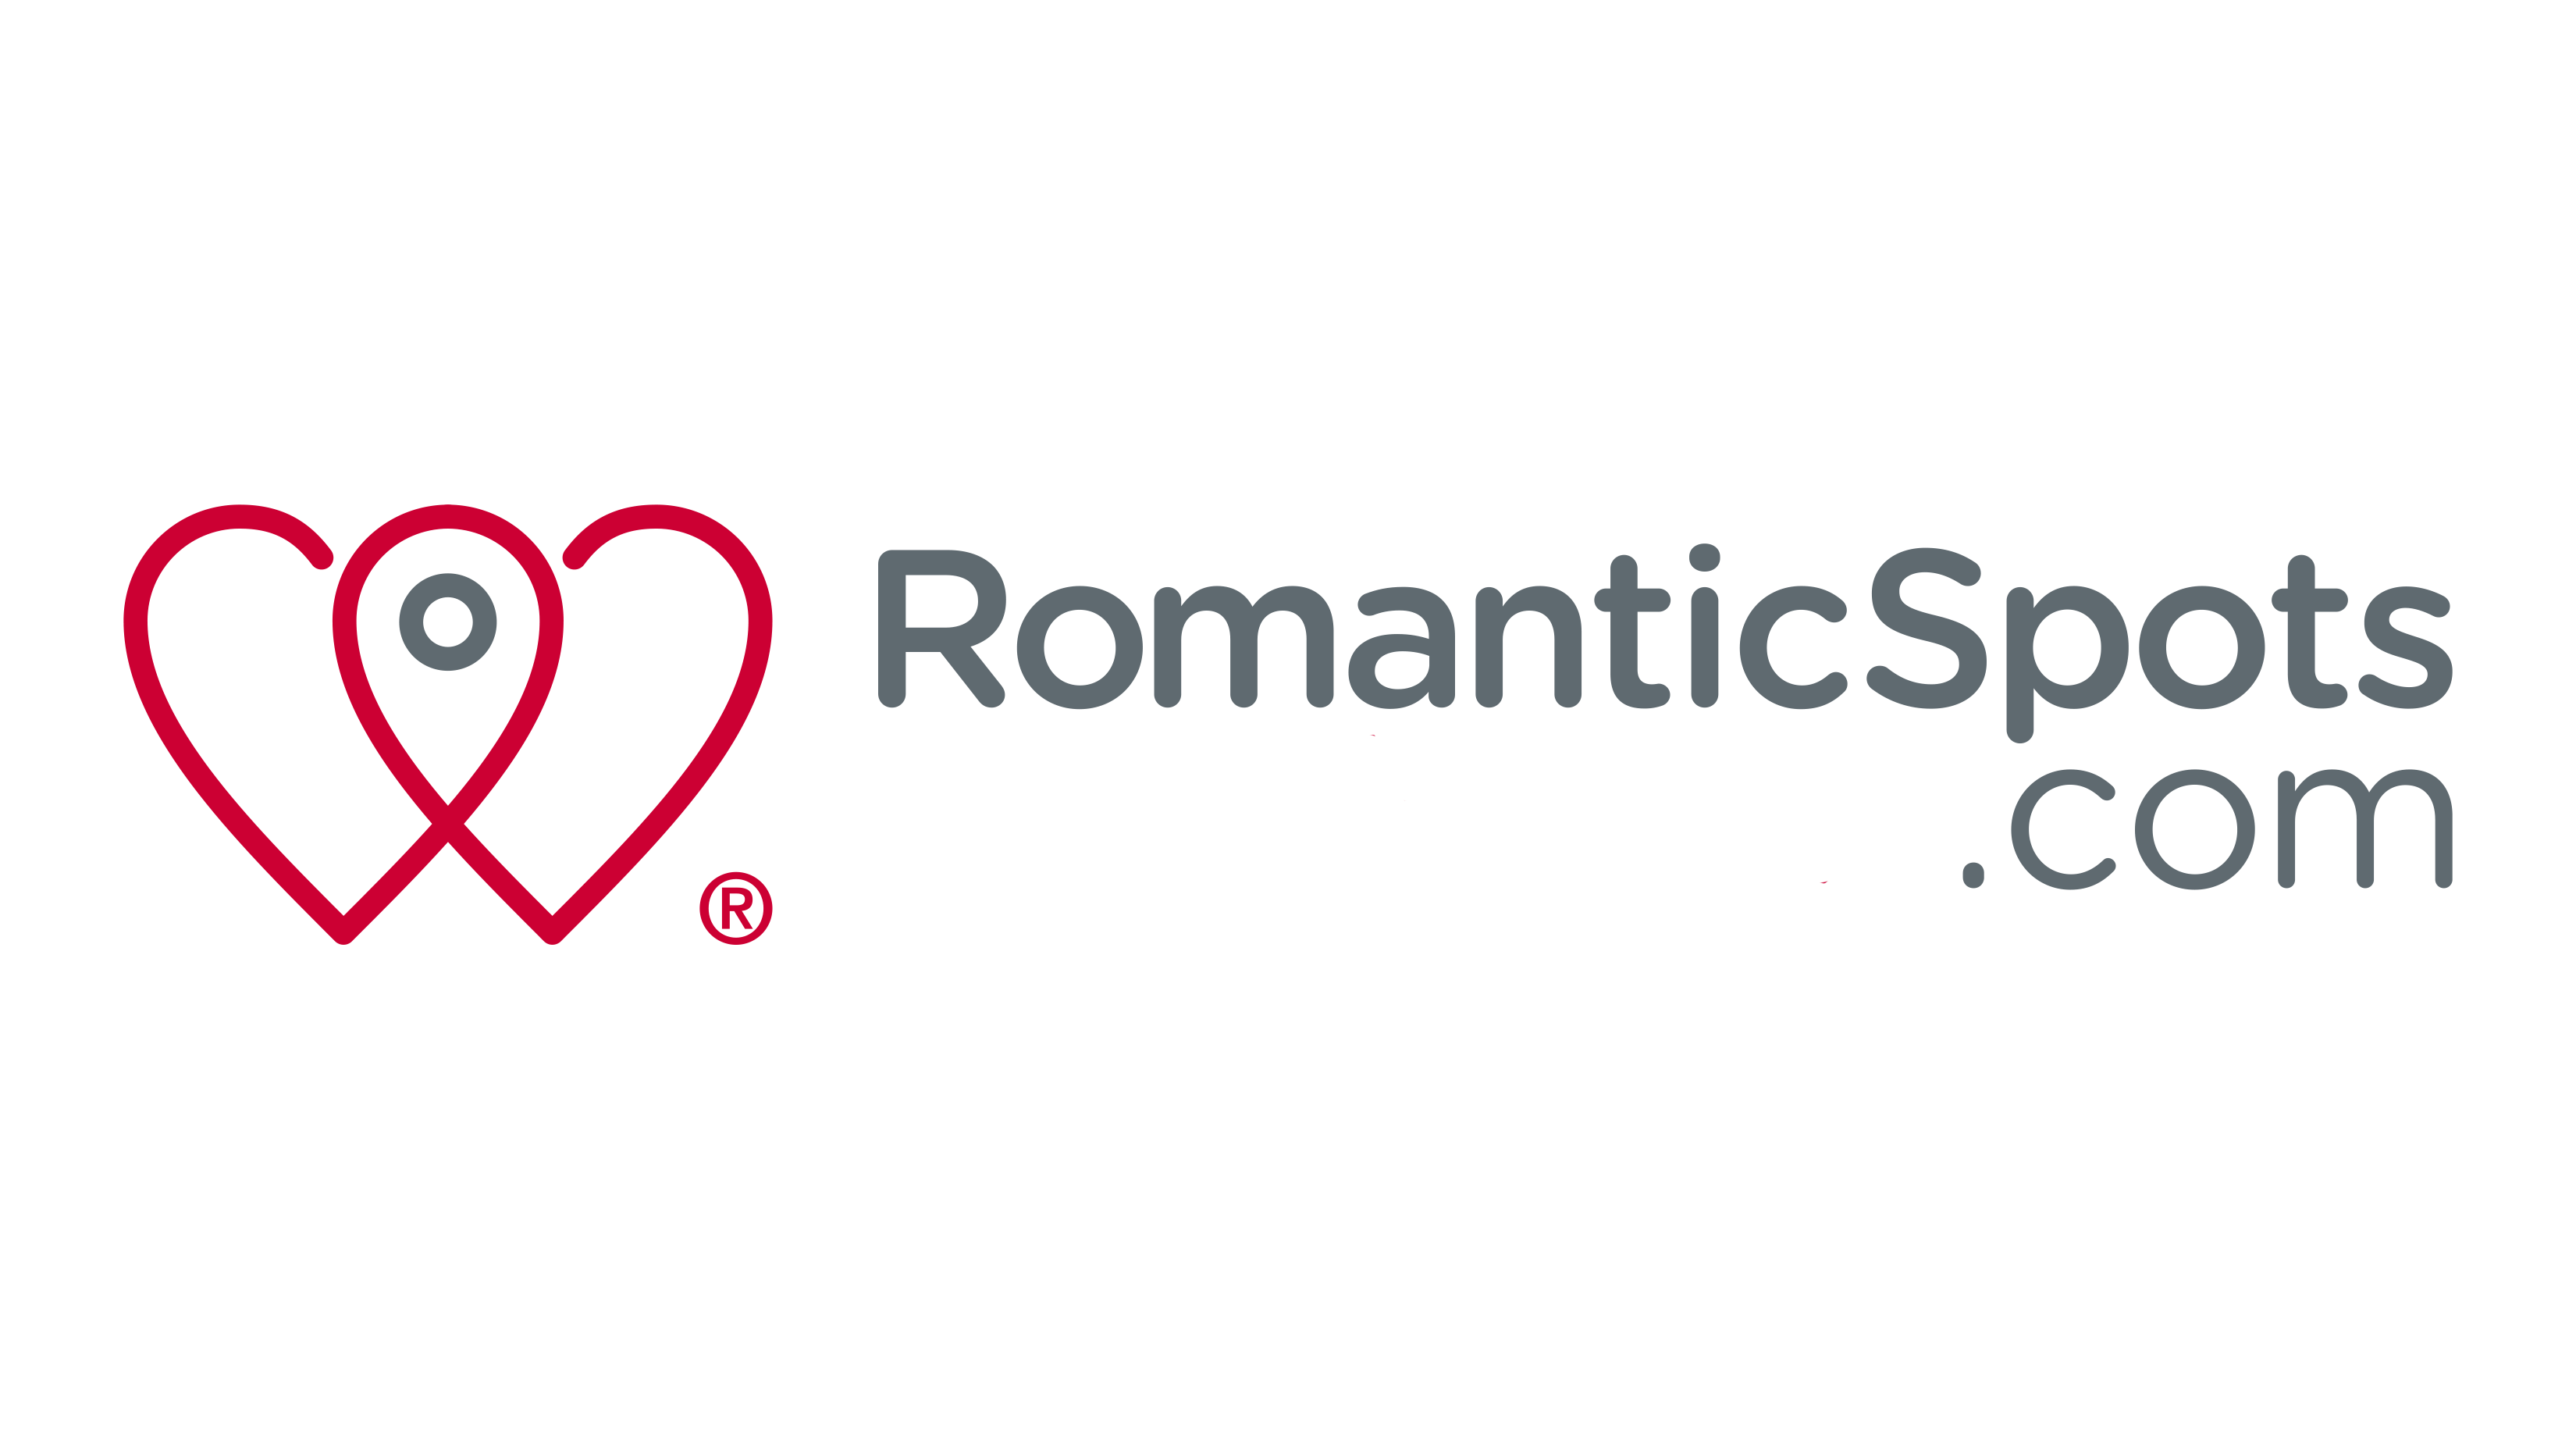 RomanticSpots.com